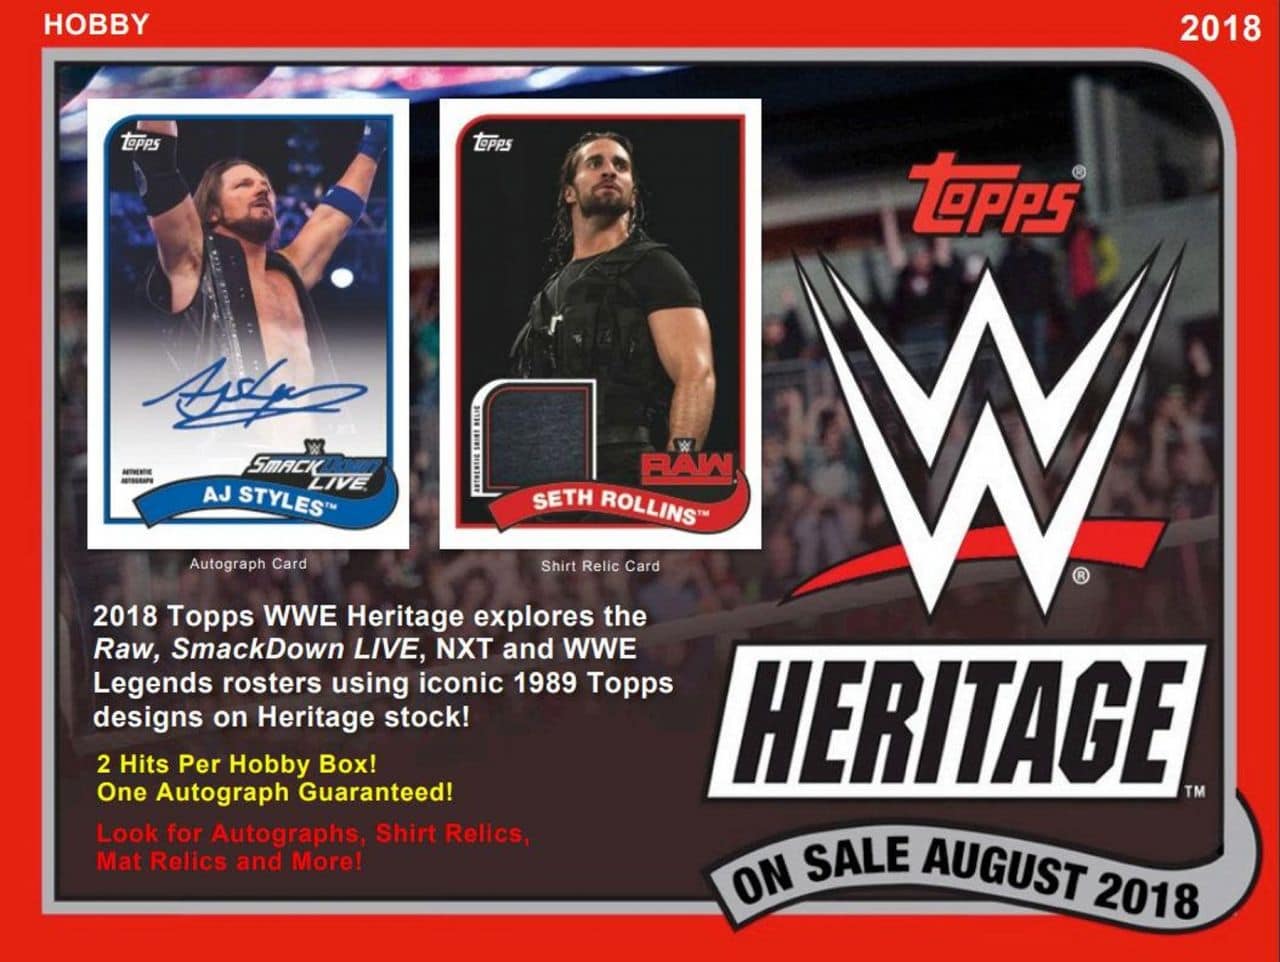 2018 TOPPS WWE HERITAGE WRESTLING HOBBY BOX